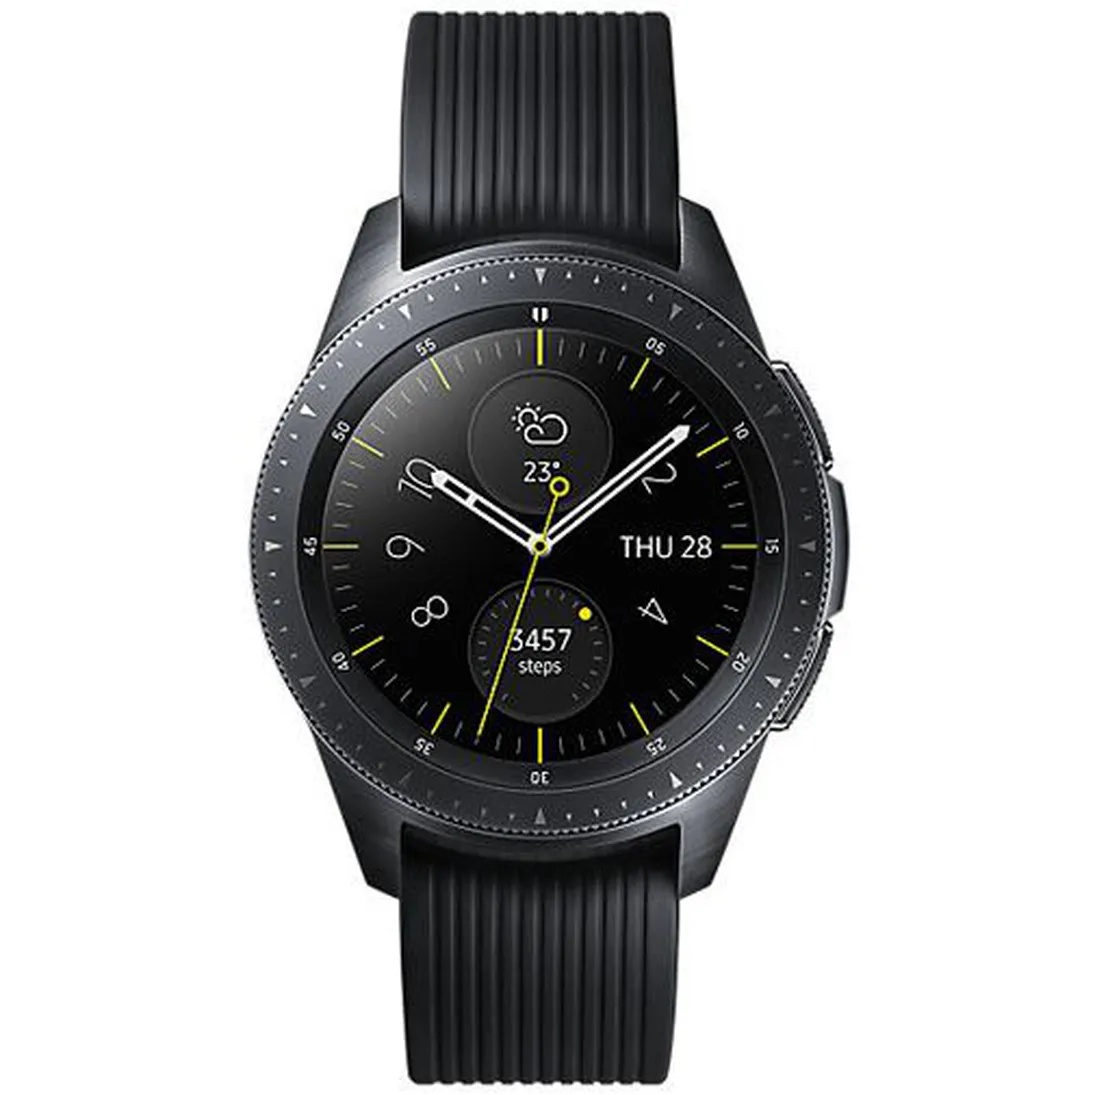 SM-R815 Galaxy Watch 42mm (4G/LTE Version)